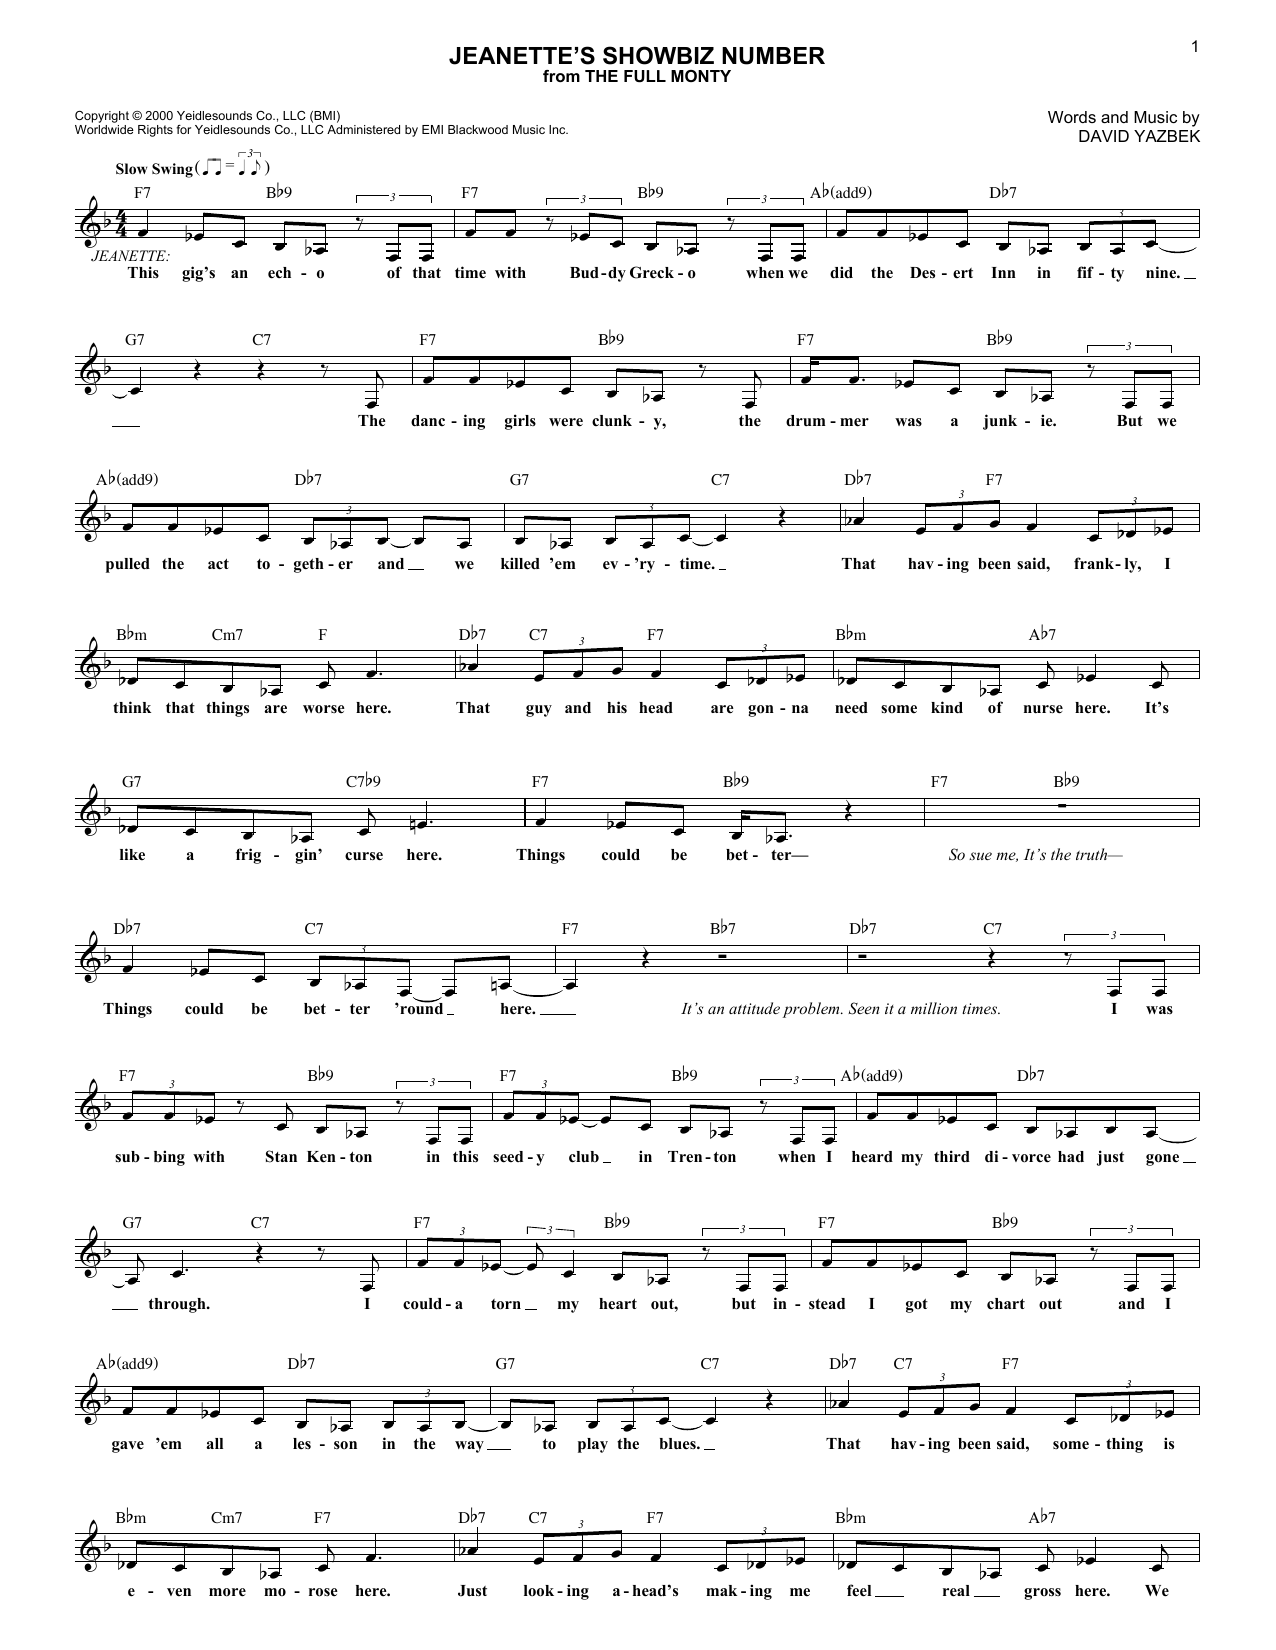 David Yazbek Jeanette's Showbiz Number Sheet Music Notes & Chords for Melody Line, Lyrics & Chords - Download or Print PDF